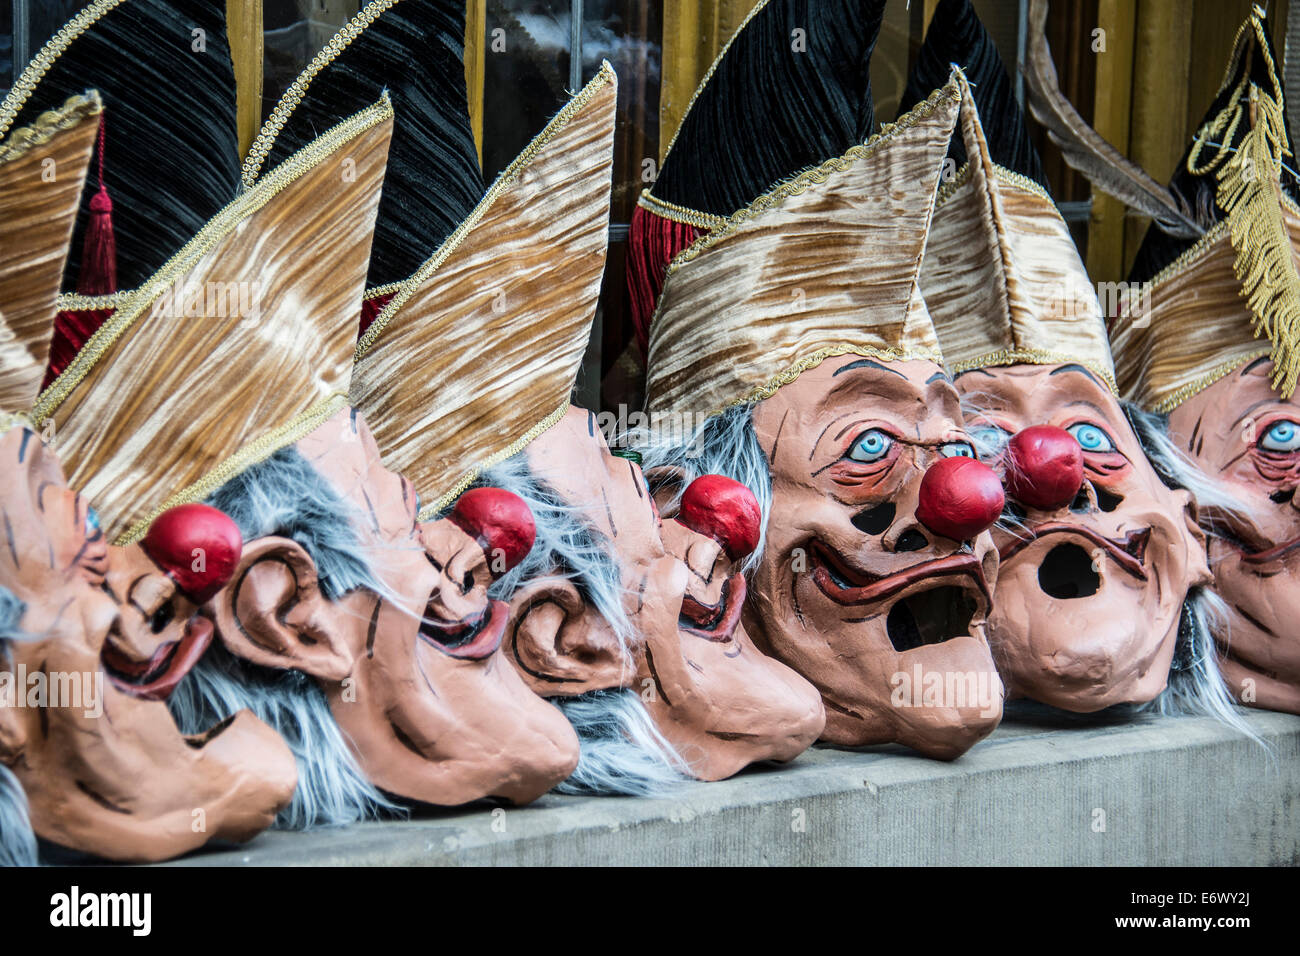 Les masques de carnaval, Carnaval de Bâle, le canton de Bâle, Suisse Banque D'Images